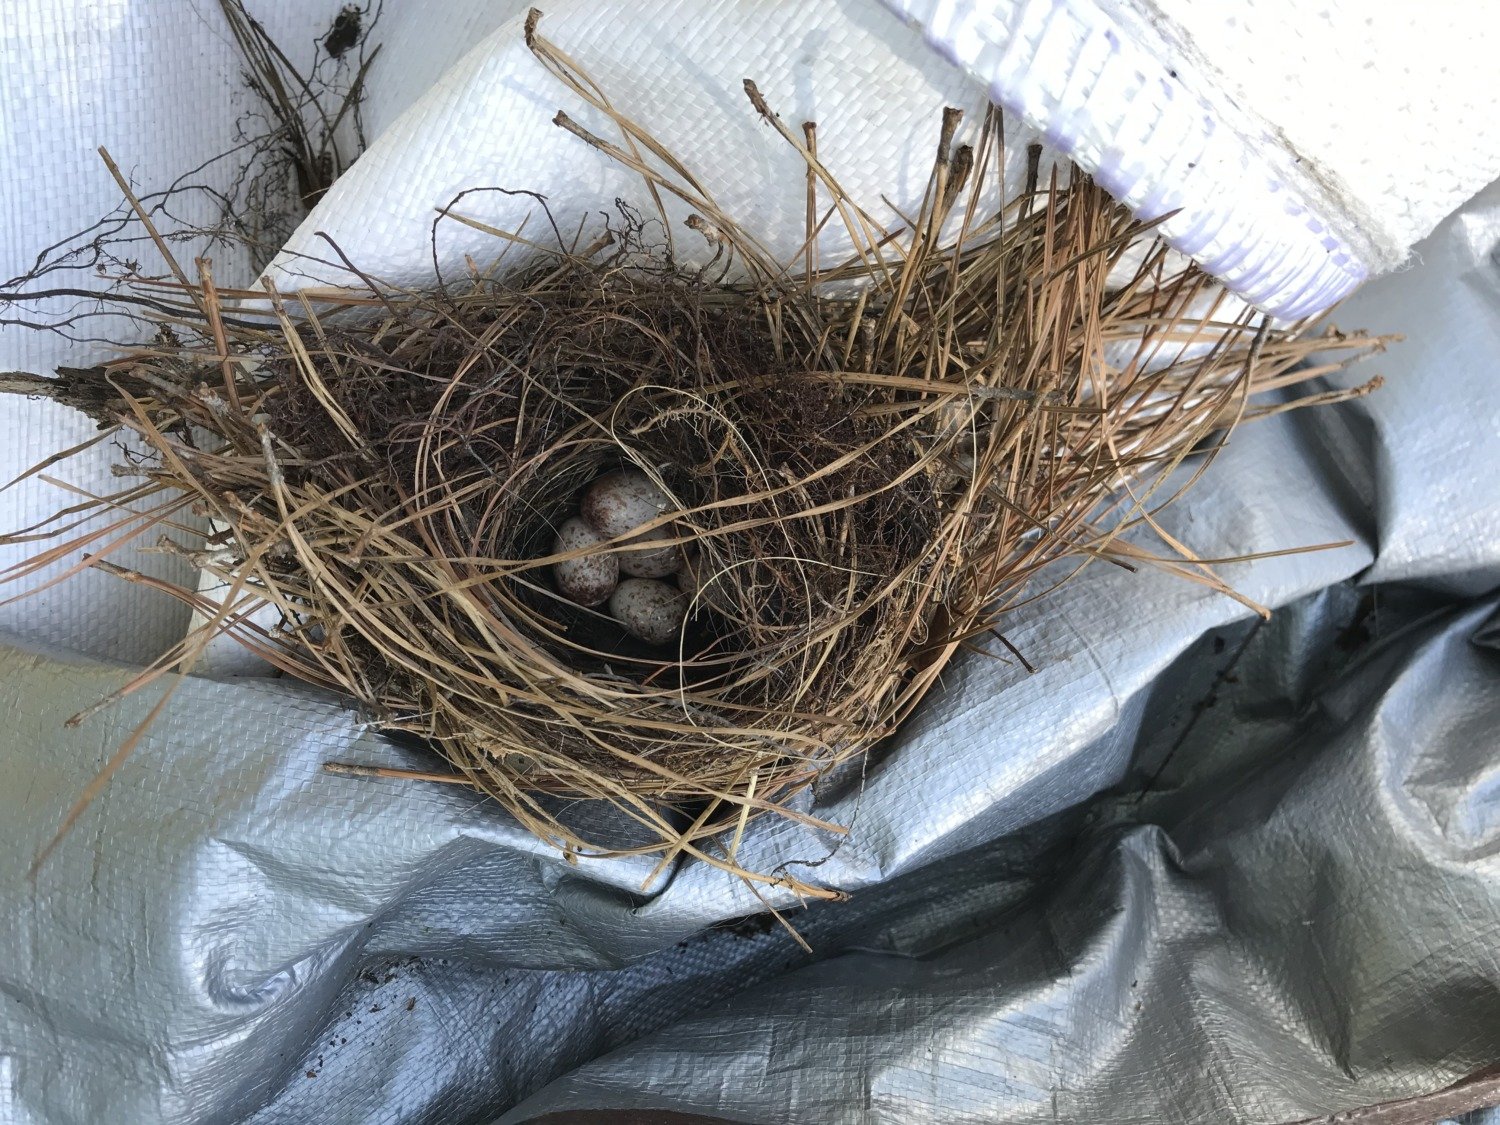 Wren's nest in a pile of tarp